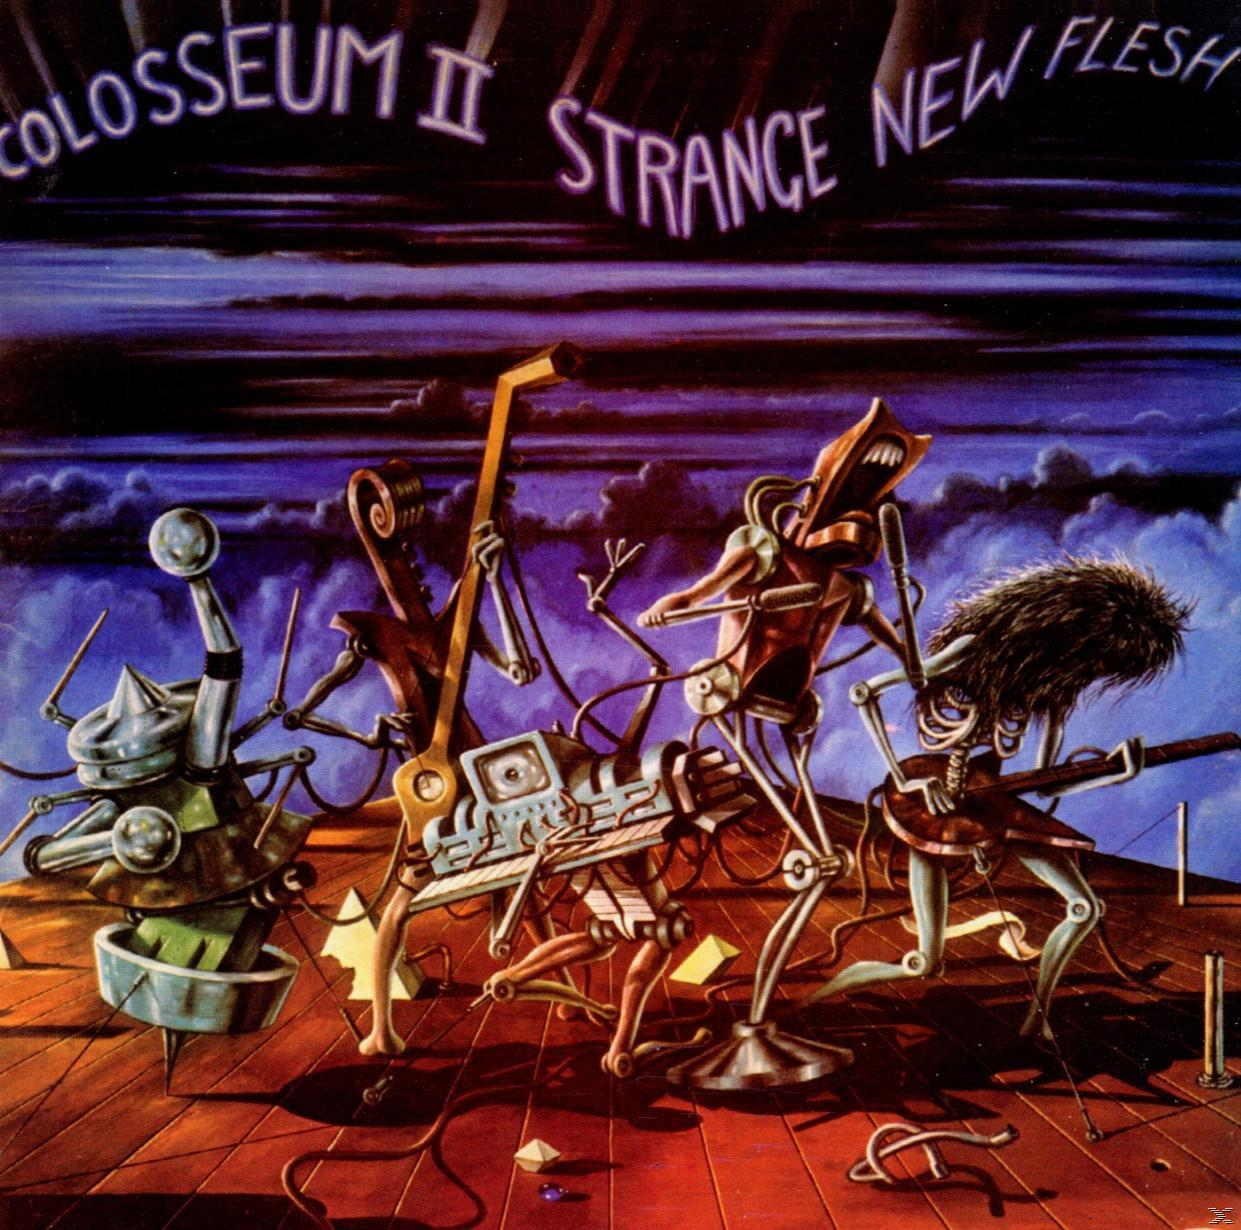 Colosseum Ii - Strange (CD) - Flesh Remastered+Expanded New 